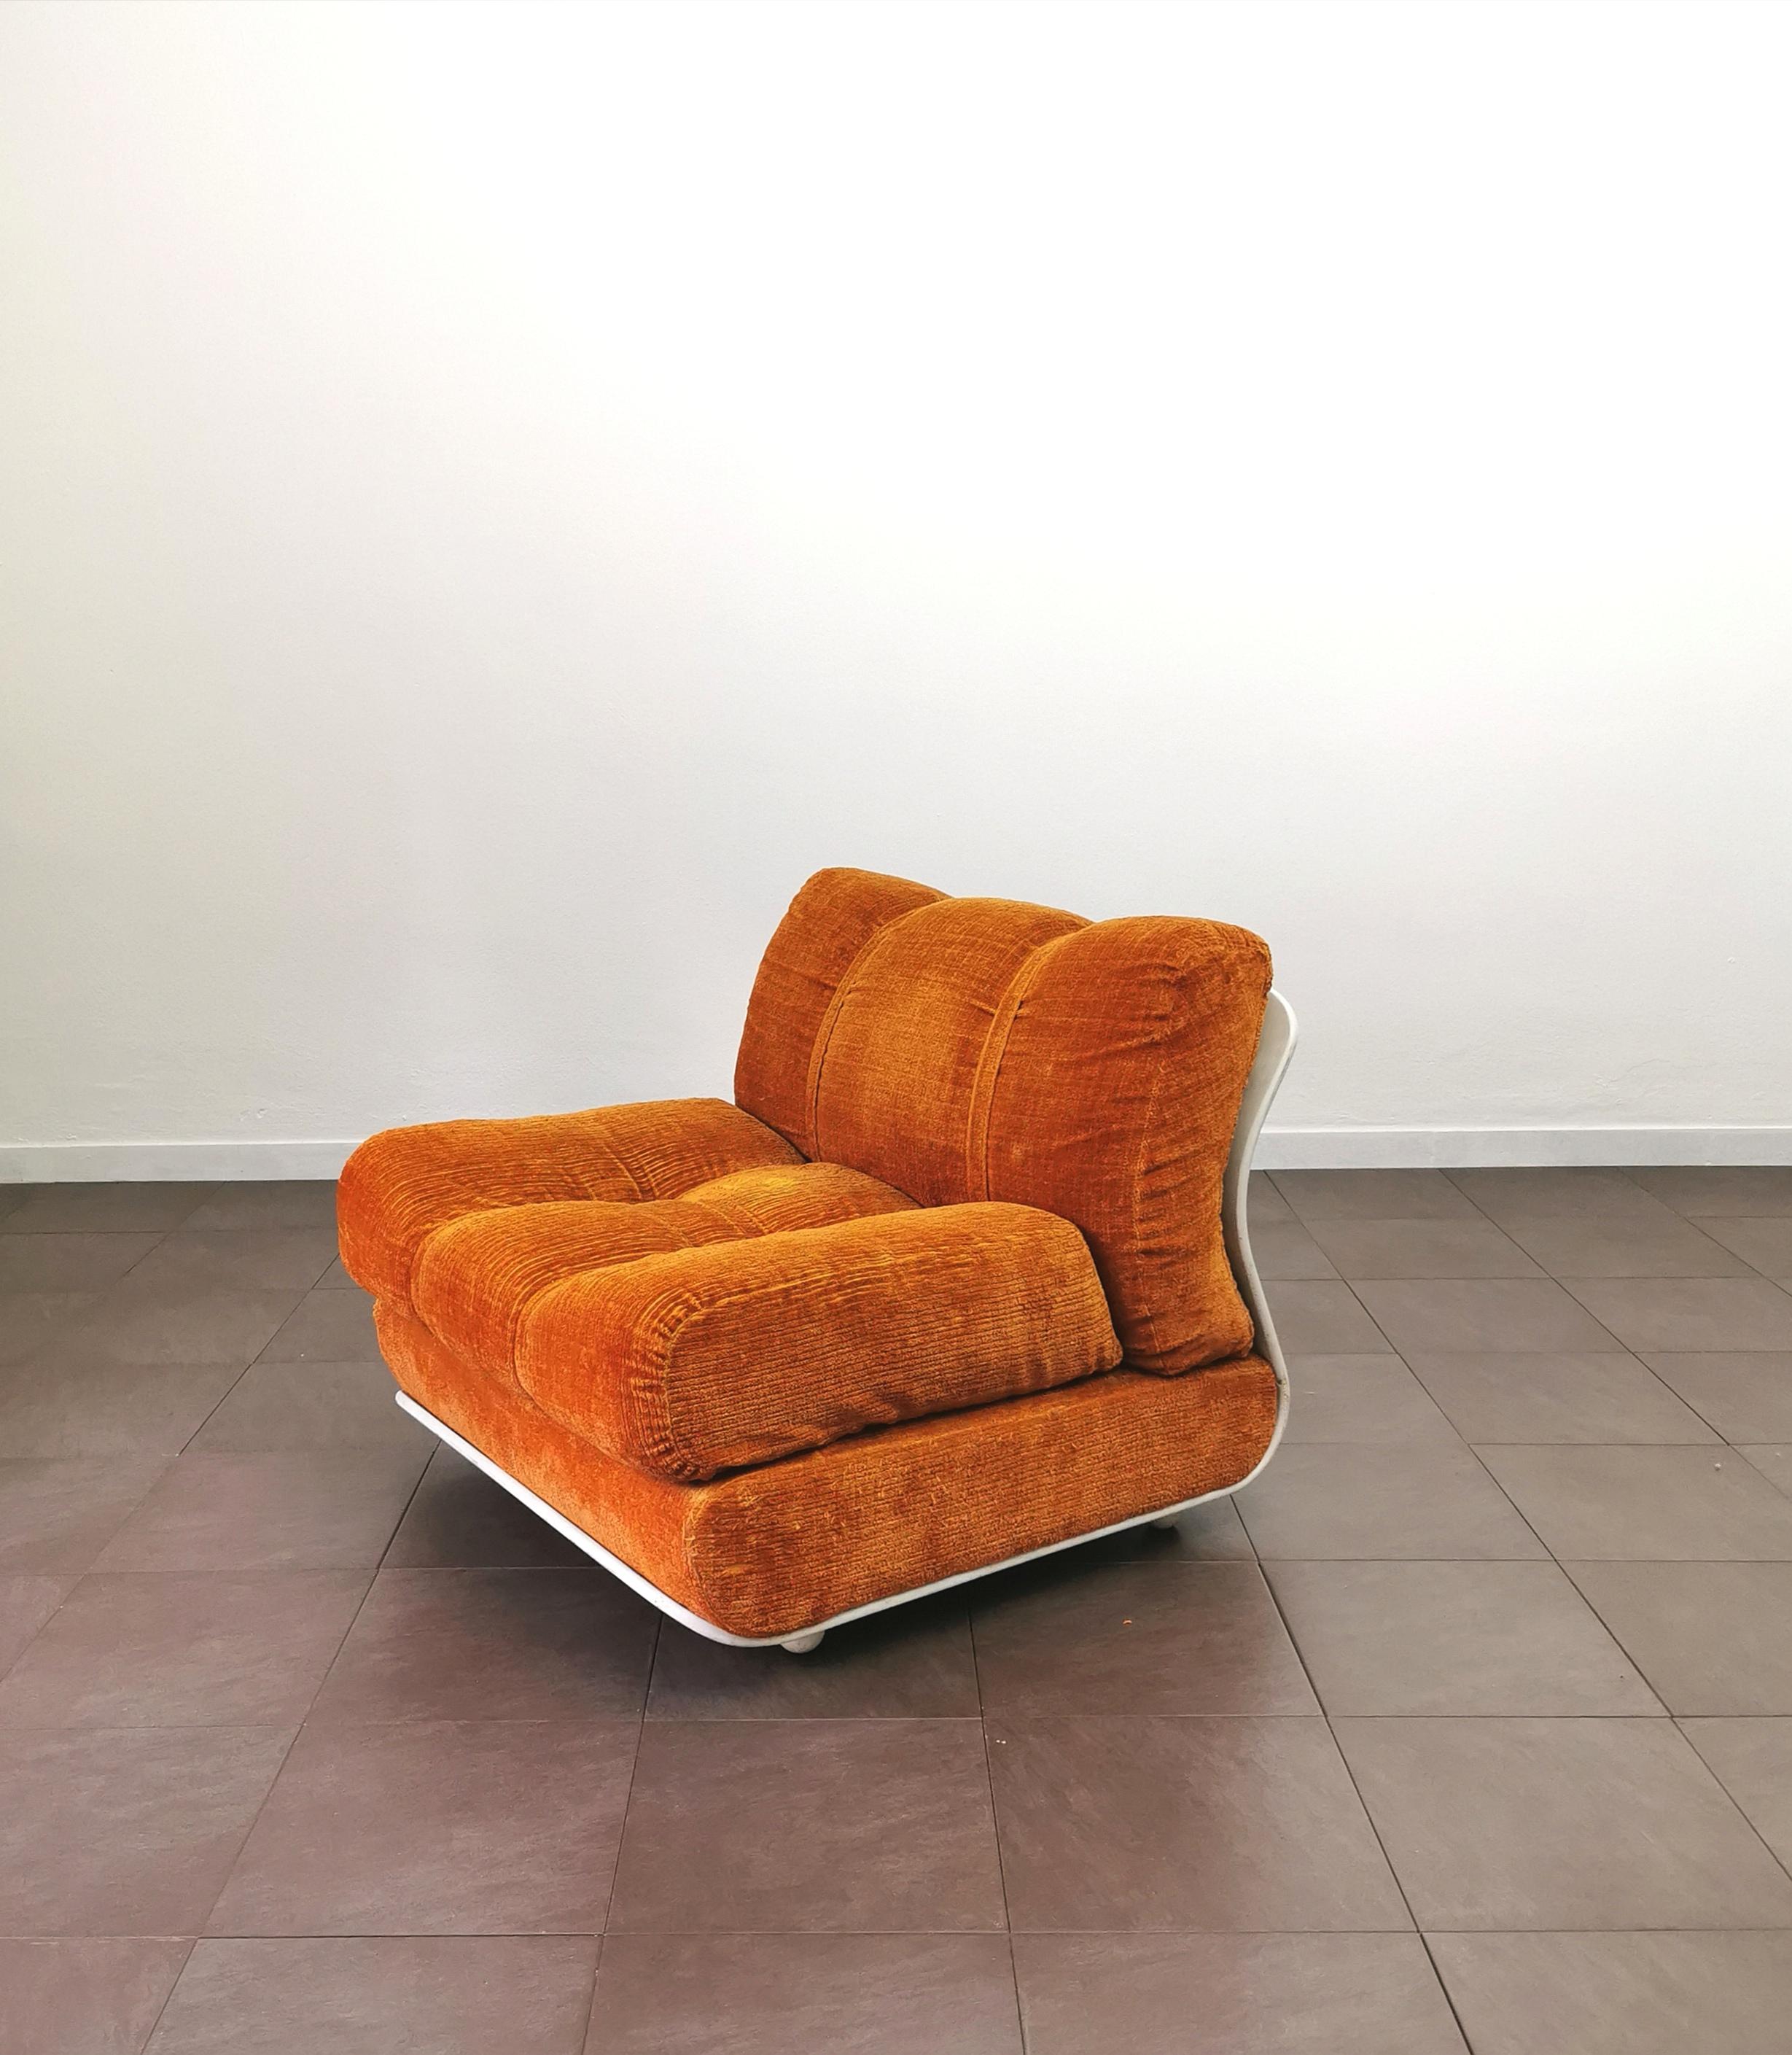 Mid-Century Modern Curved Armchair Velvet Wood Enameled White Orange Midcentury Italian Design 1970